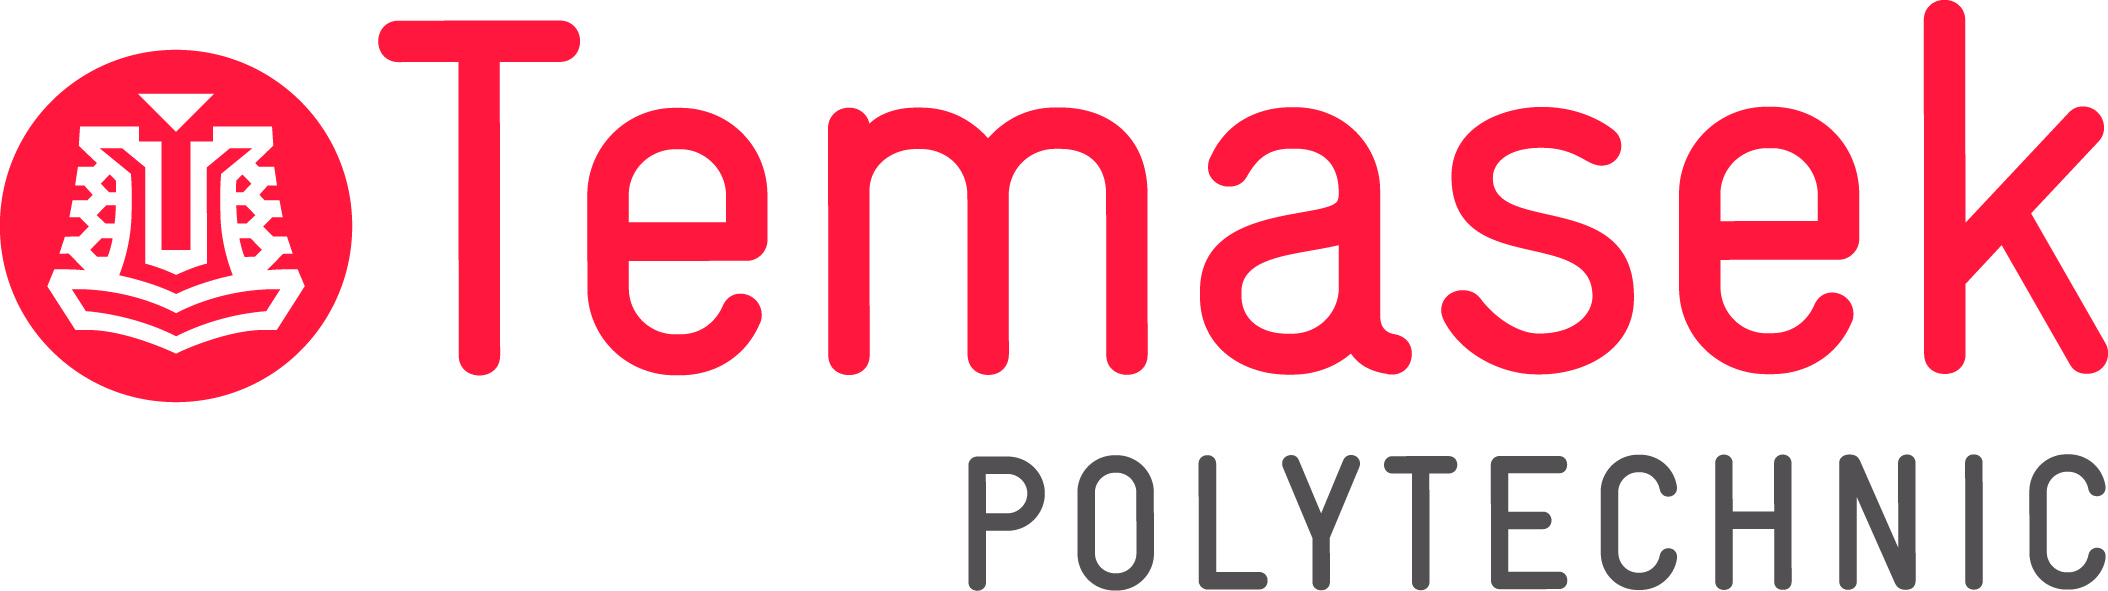 Temasek Poly logo 600dpi